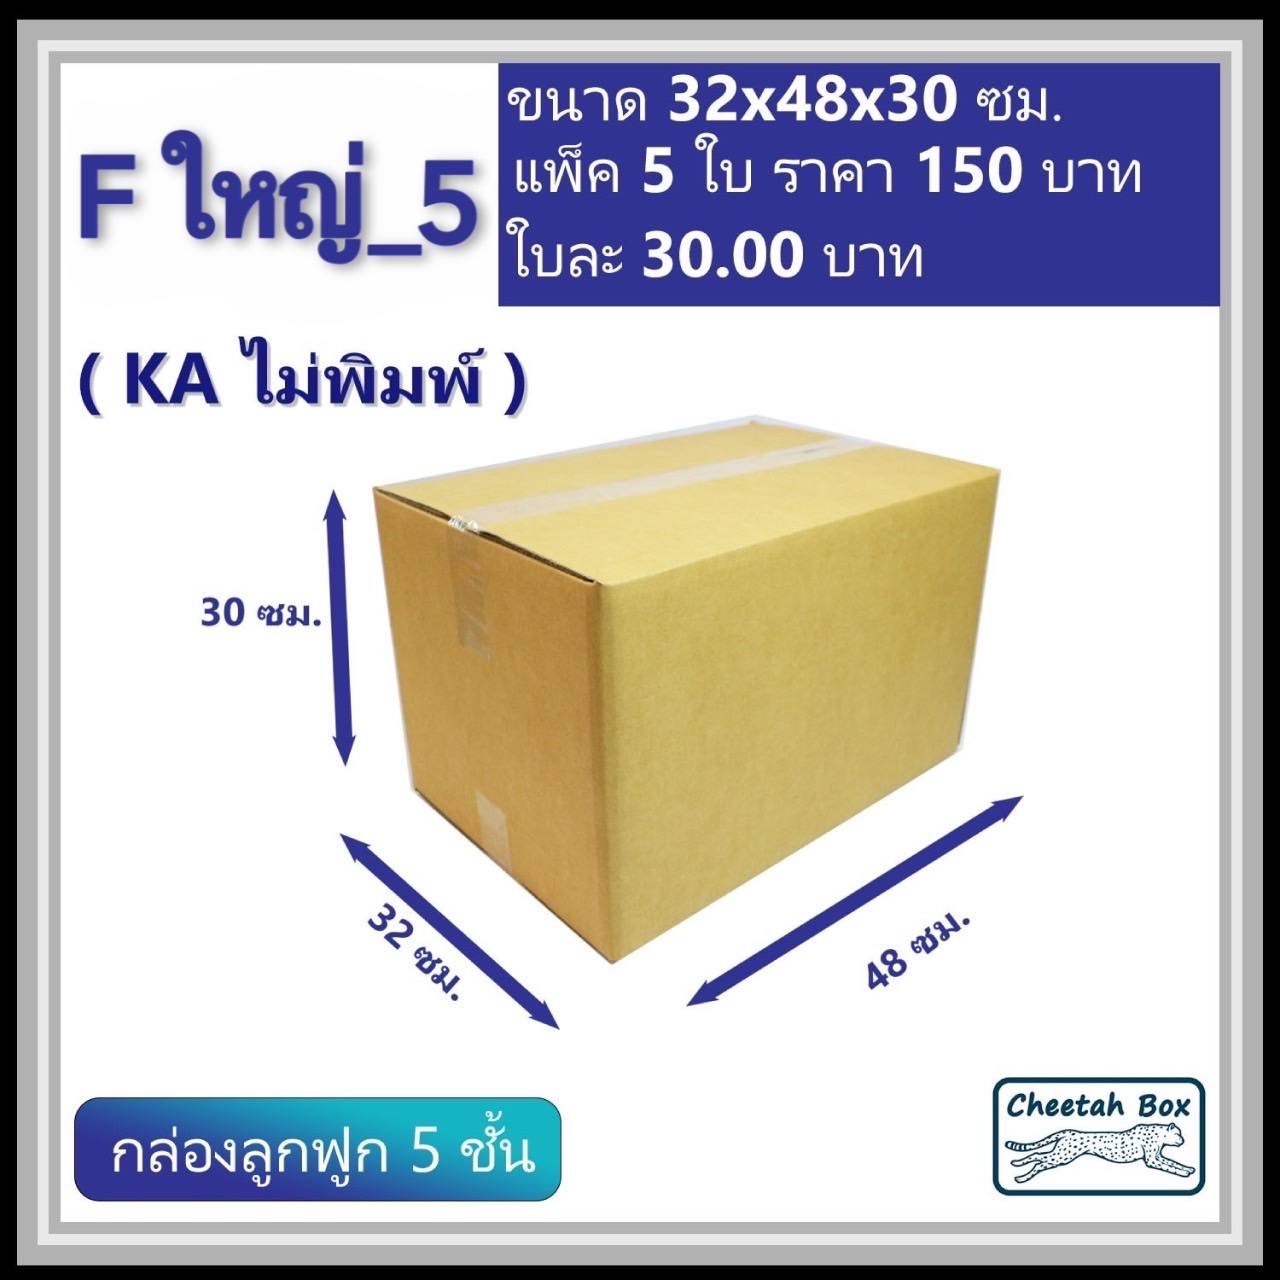 กล่องพัสดุ F ใหญ่_5 (KA125) ไม่พิมพ์ (Cheetah Box) ลูกฟูก 5 ชั้น ขนาด 32W x 48L x 30H cm.